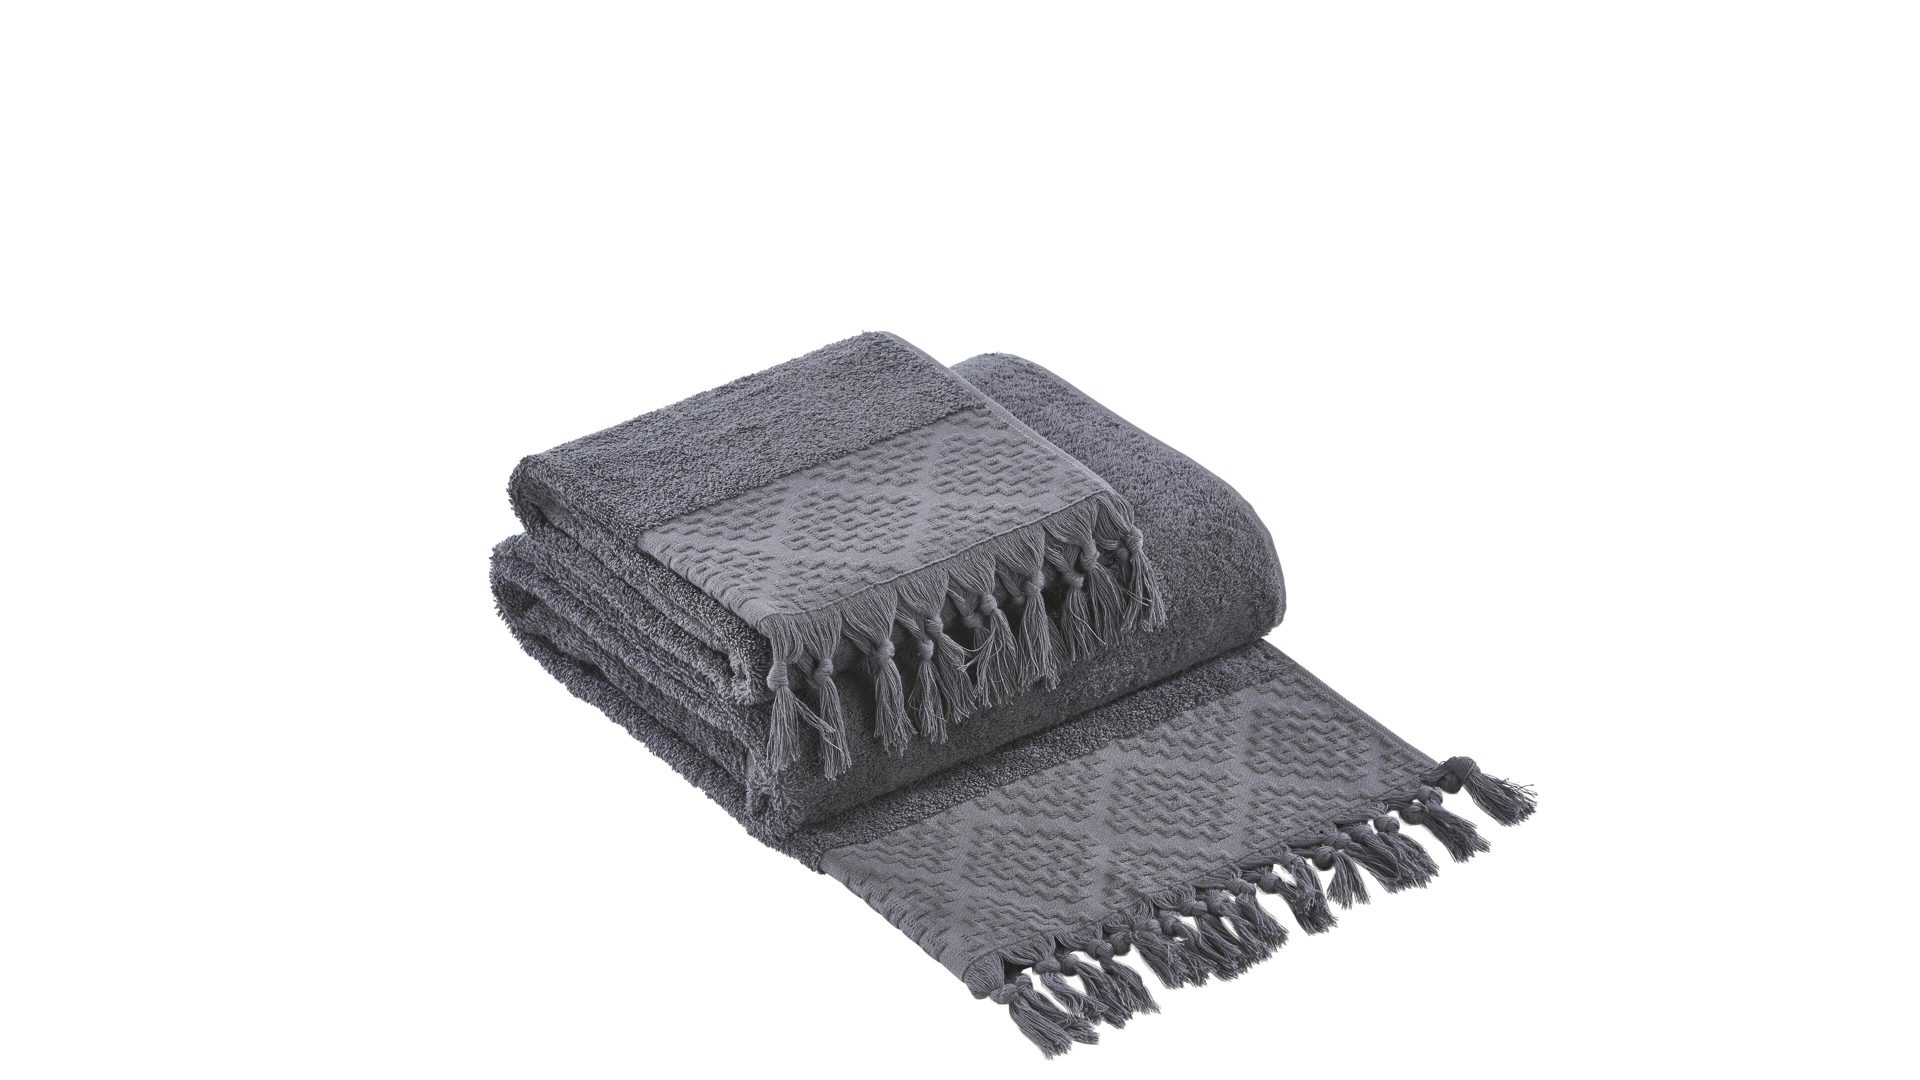 Handtuch-Set Done.® aus Stoff in Anthrazit done.® Handtuch-Set Provence Boheme - Heimtextilien anthrazitfarbene Baumwolle – zweiteilig